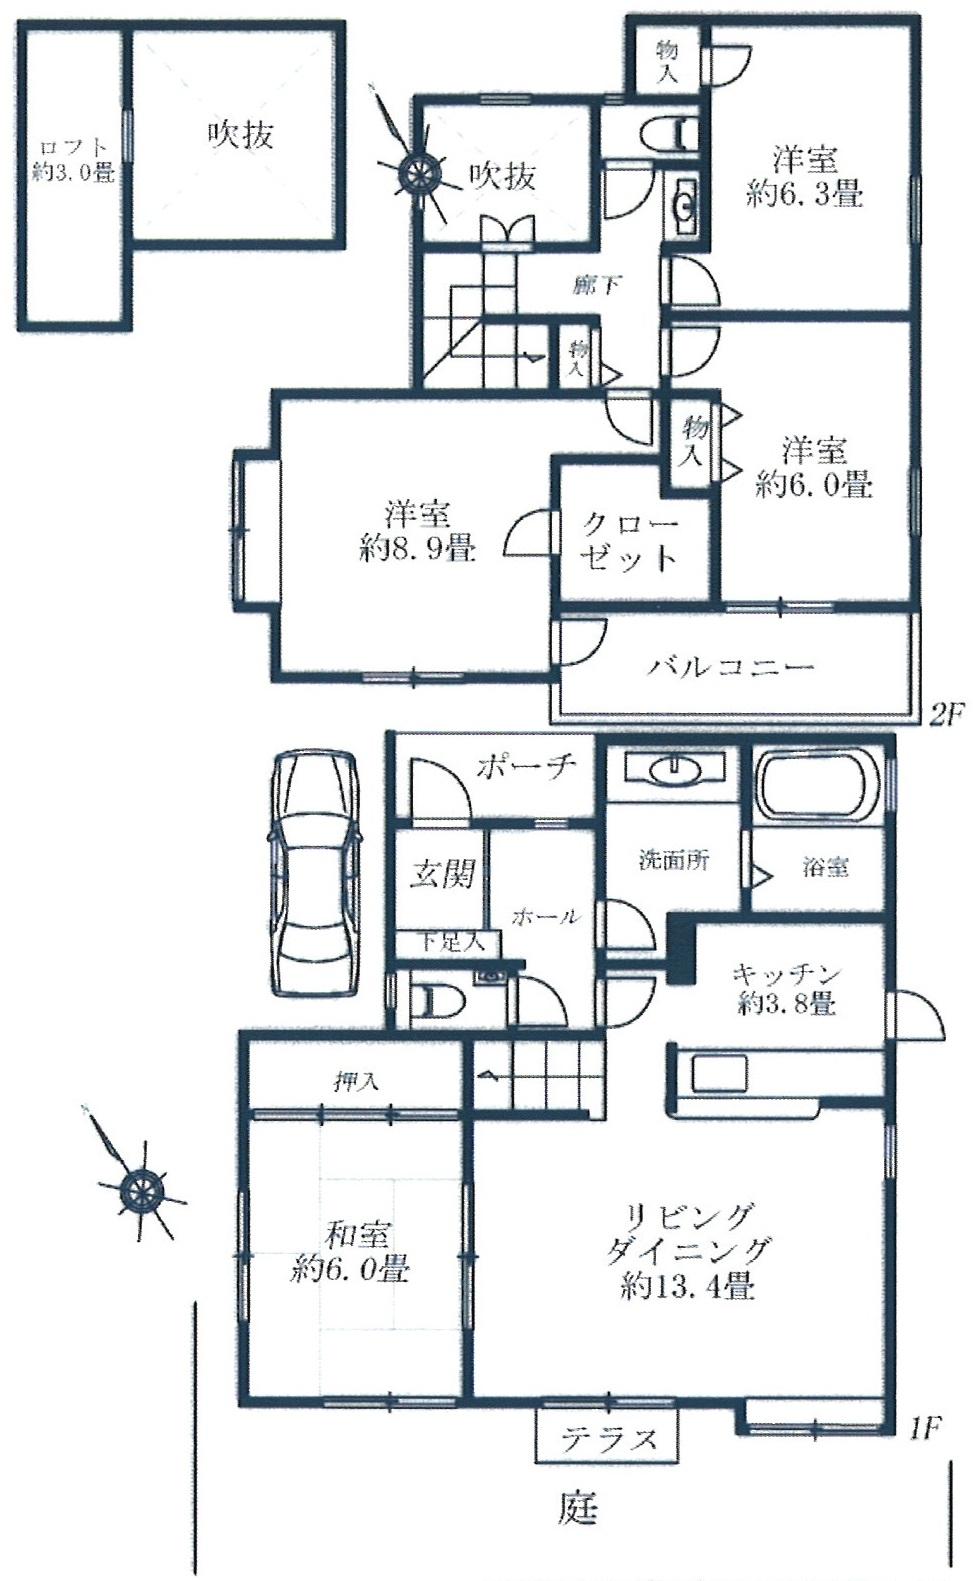 Floor plan. 36,800,000 yen, 4LDK + S (storeroom), Land area 135.11 sq m , Building area 105.98 sq m